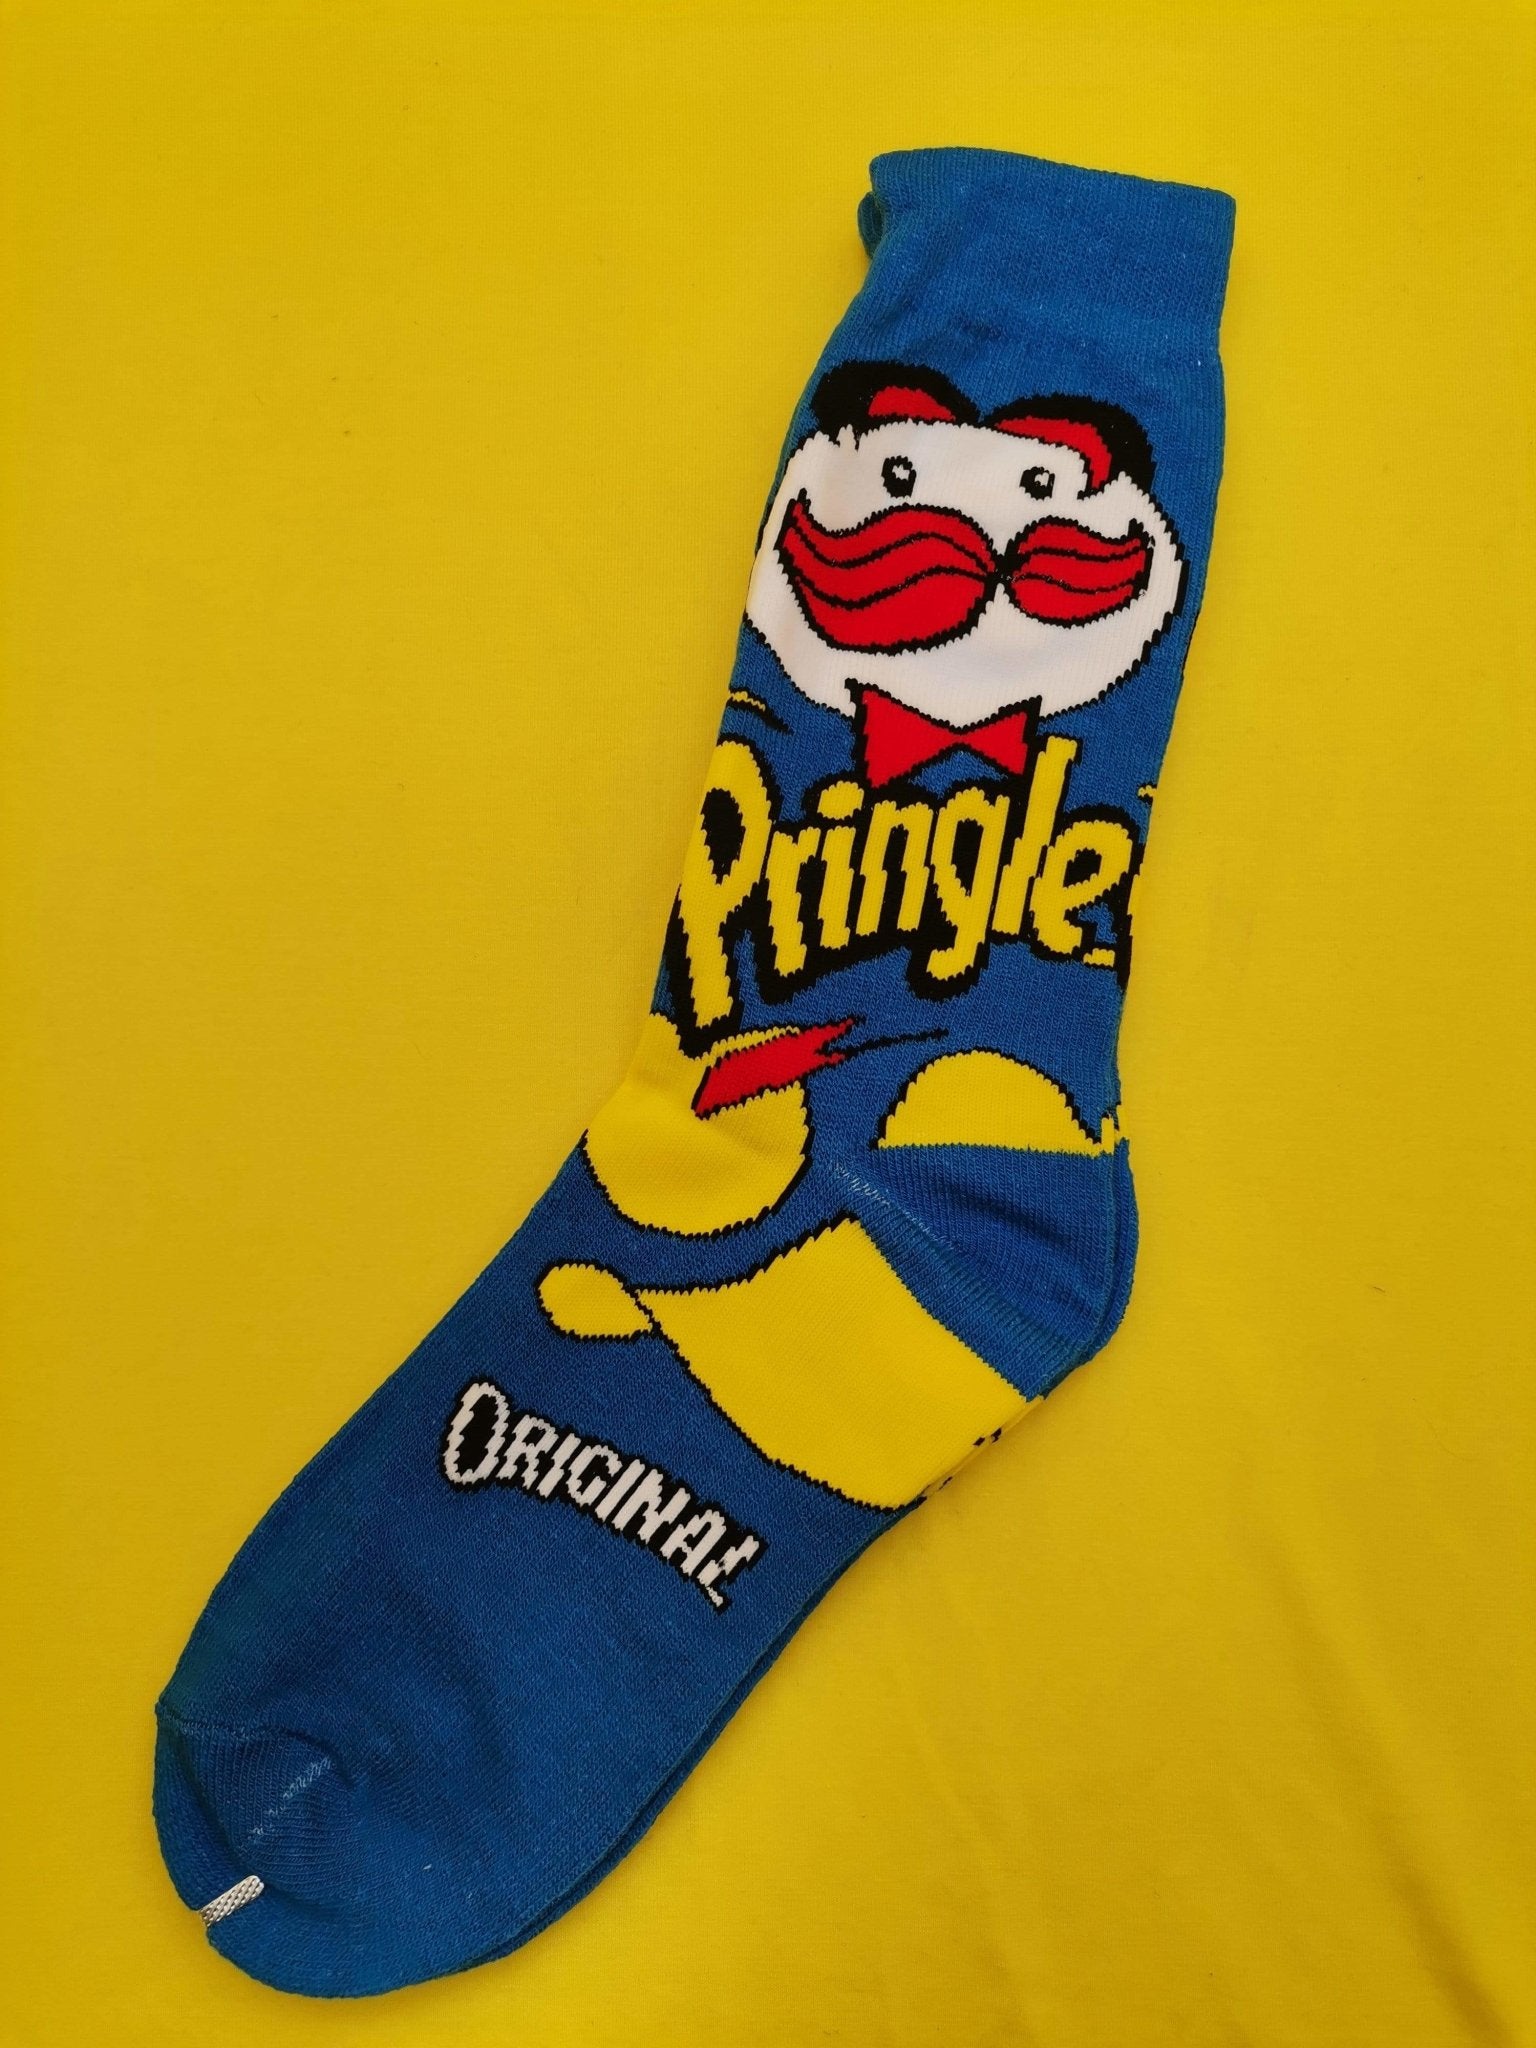 Pringle Blue Socks